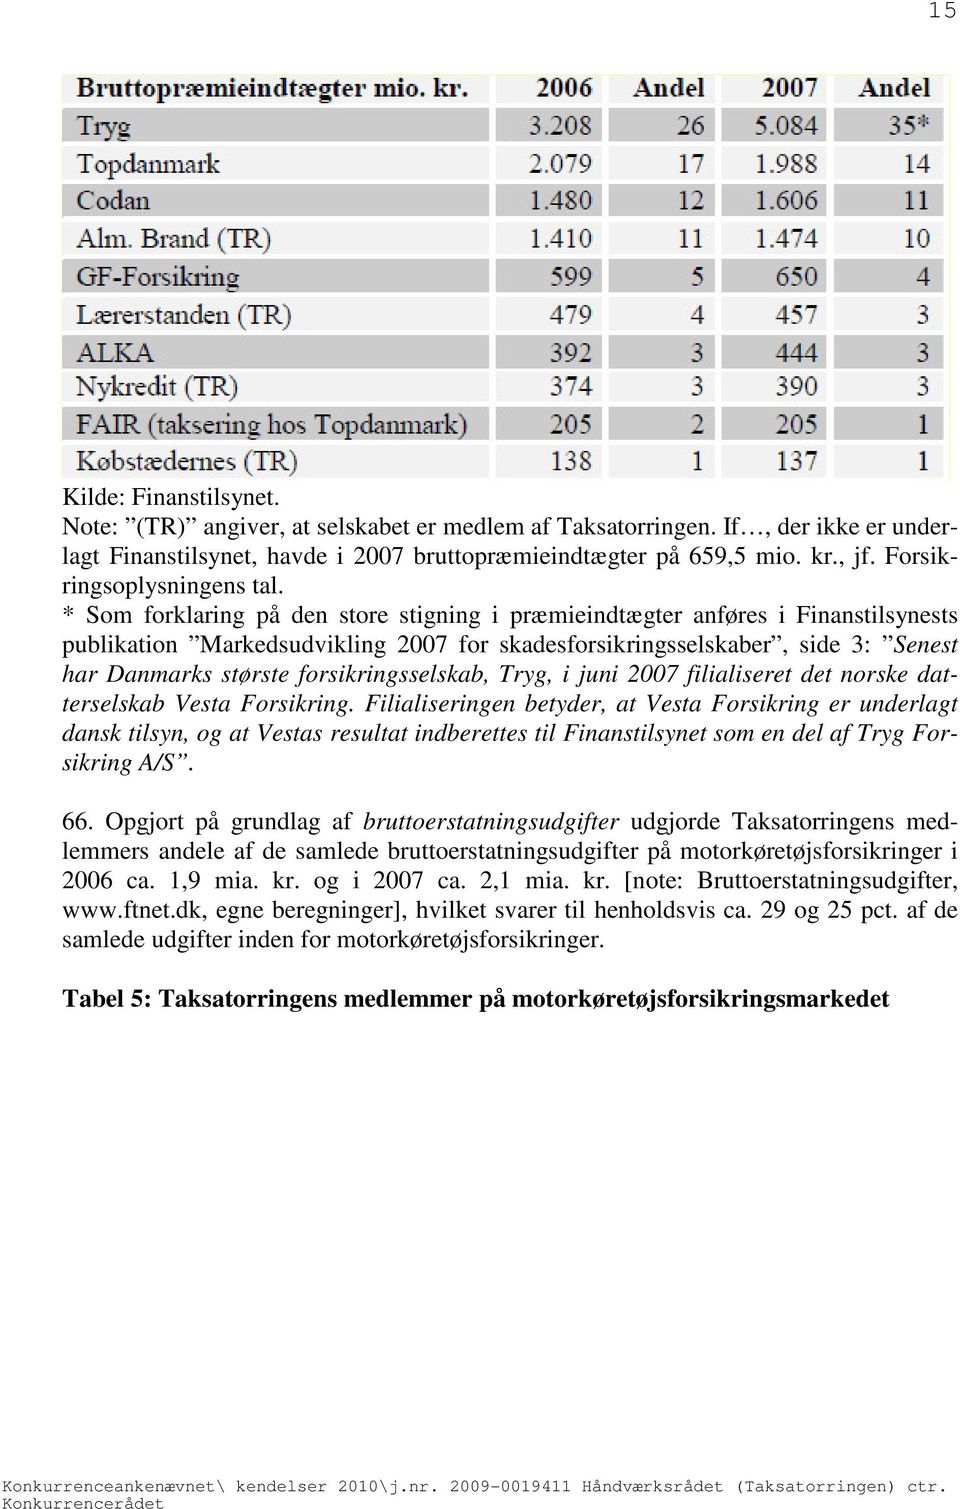 * Som forklaring på den store stigning i præmieindtægter anføres i Finanstilsynests publikation Markedsudvikling 2007 for skadesforsikringsselskaber, side 3: Senest har Danmarks største